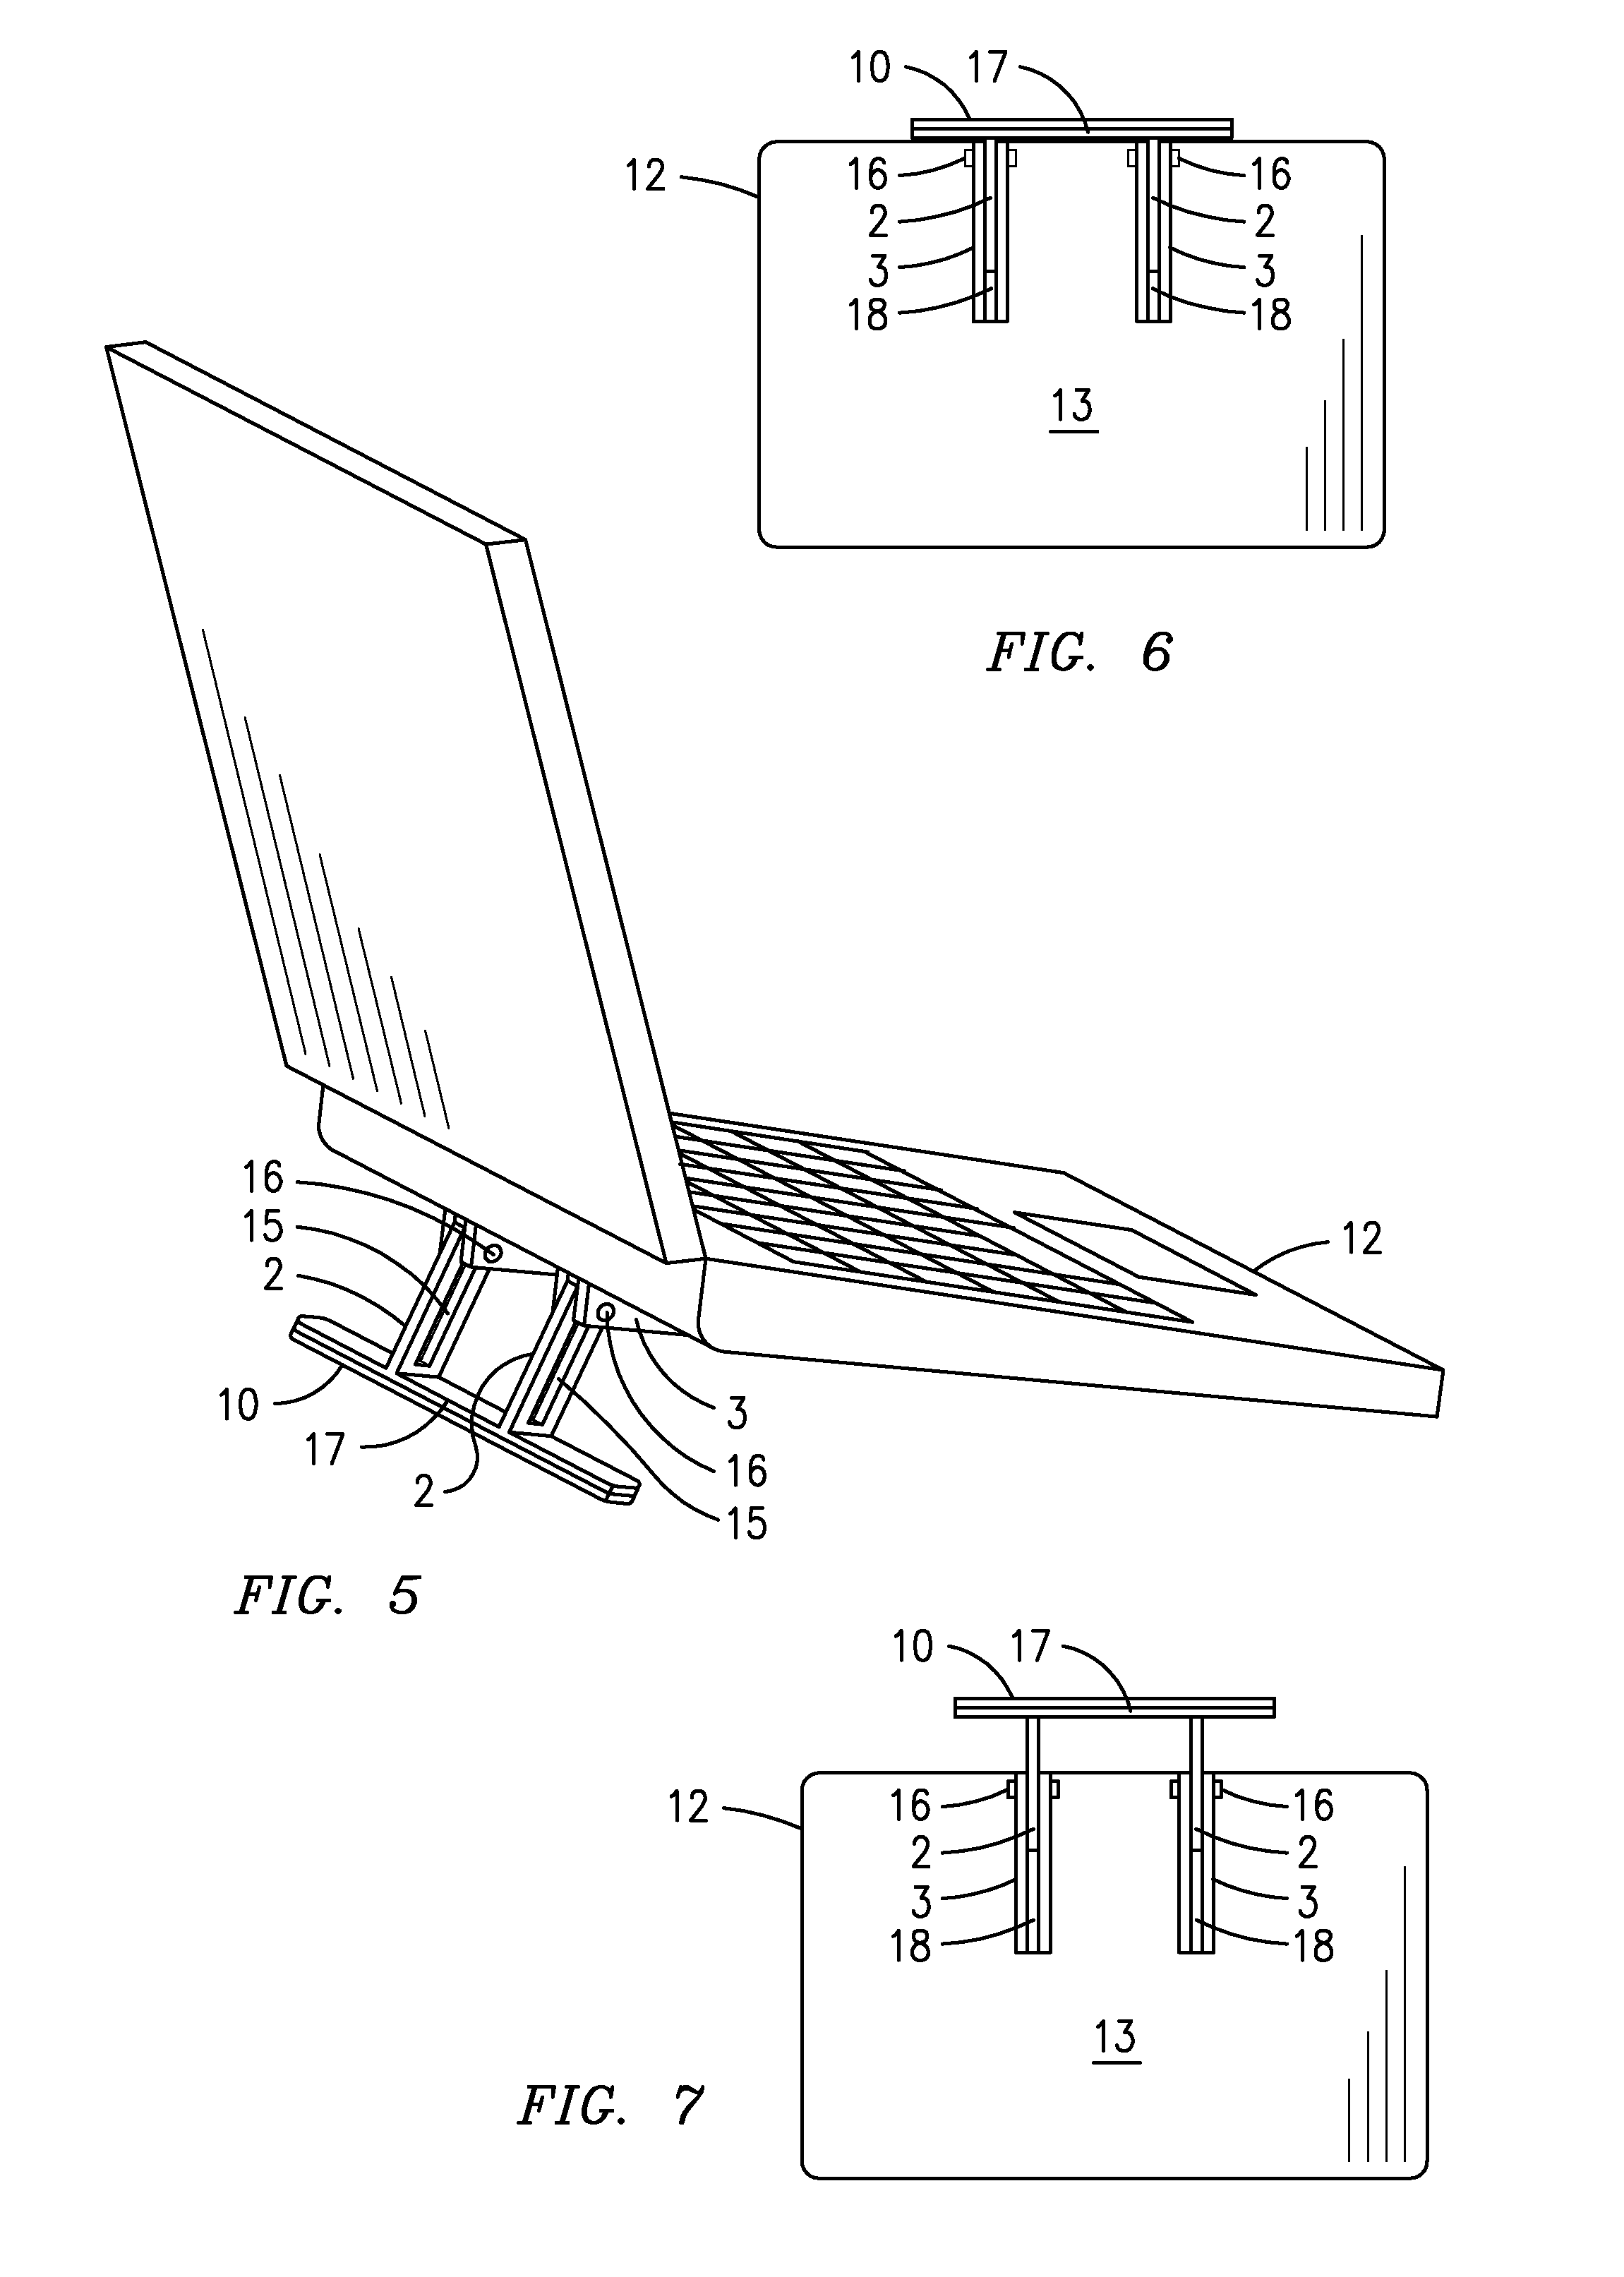 Laptop elevation device